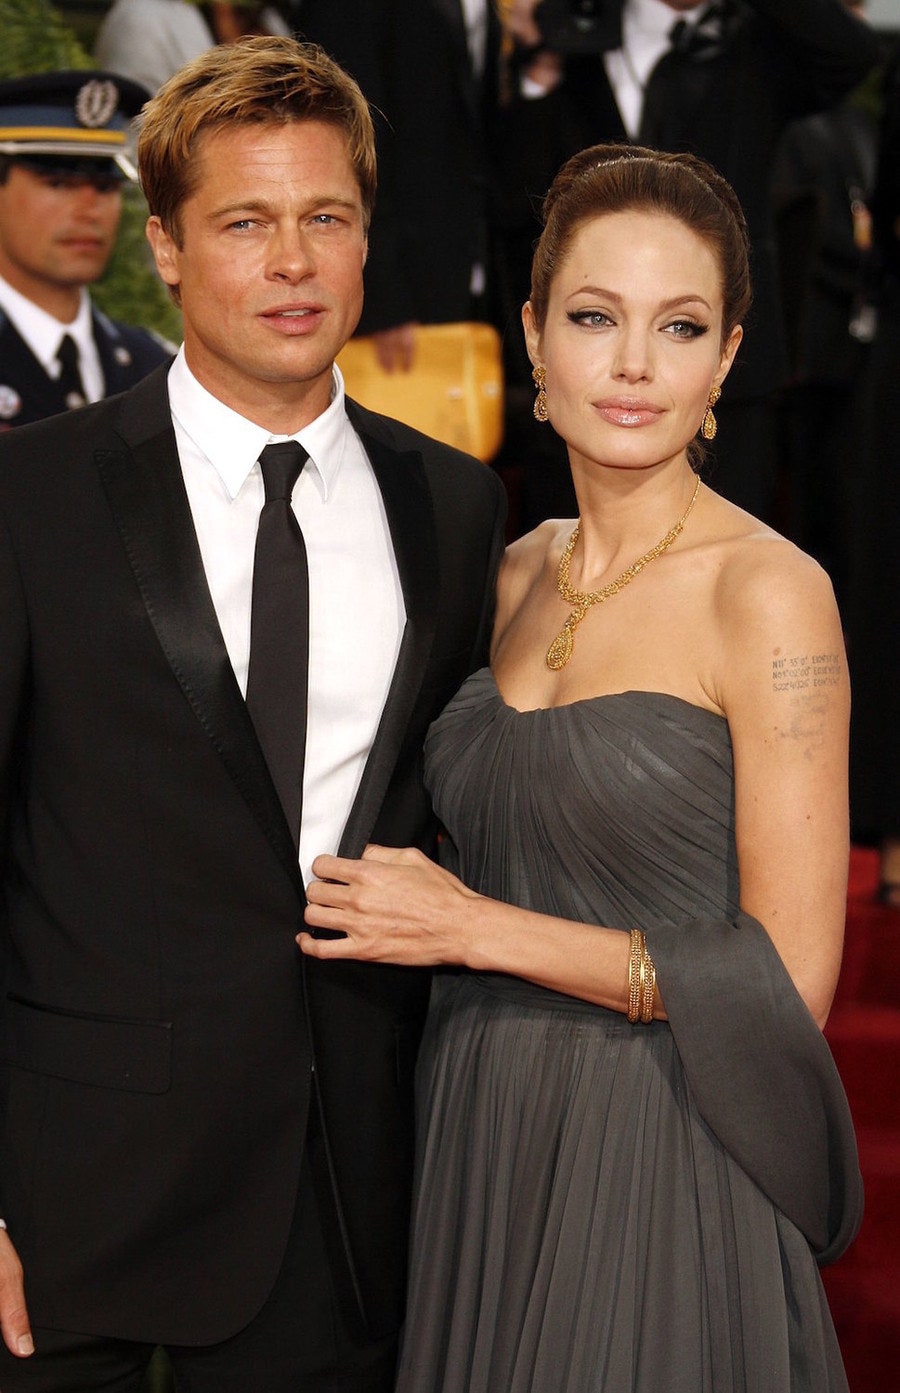 Брэд Питт хочет помириться с Анджелиной Джоли чтобы проводить больше времени с детьми | Glamour